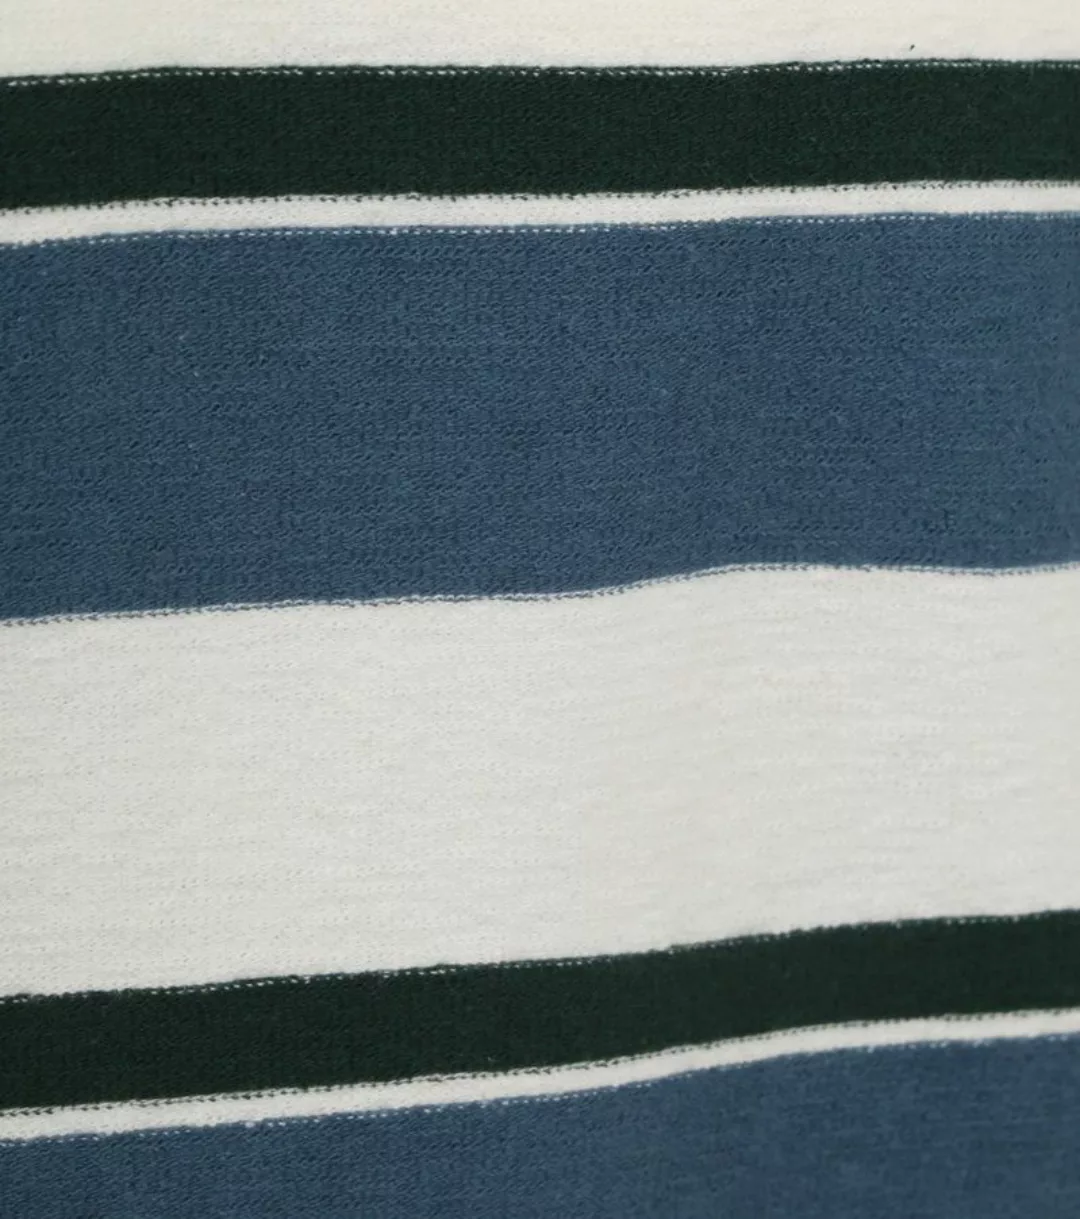 Anerkjendt Kikki T-shirt Streifen Blau - Größe S günstig online kaufen